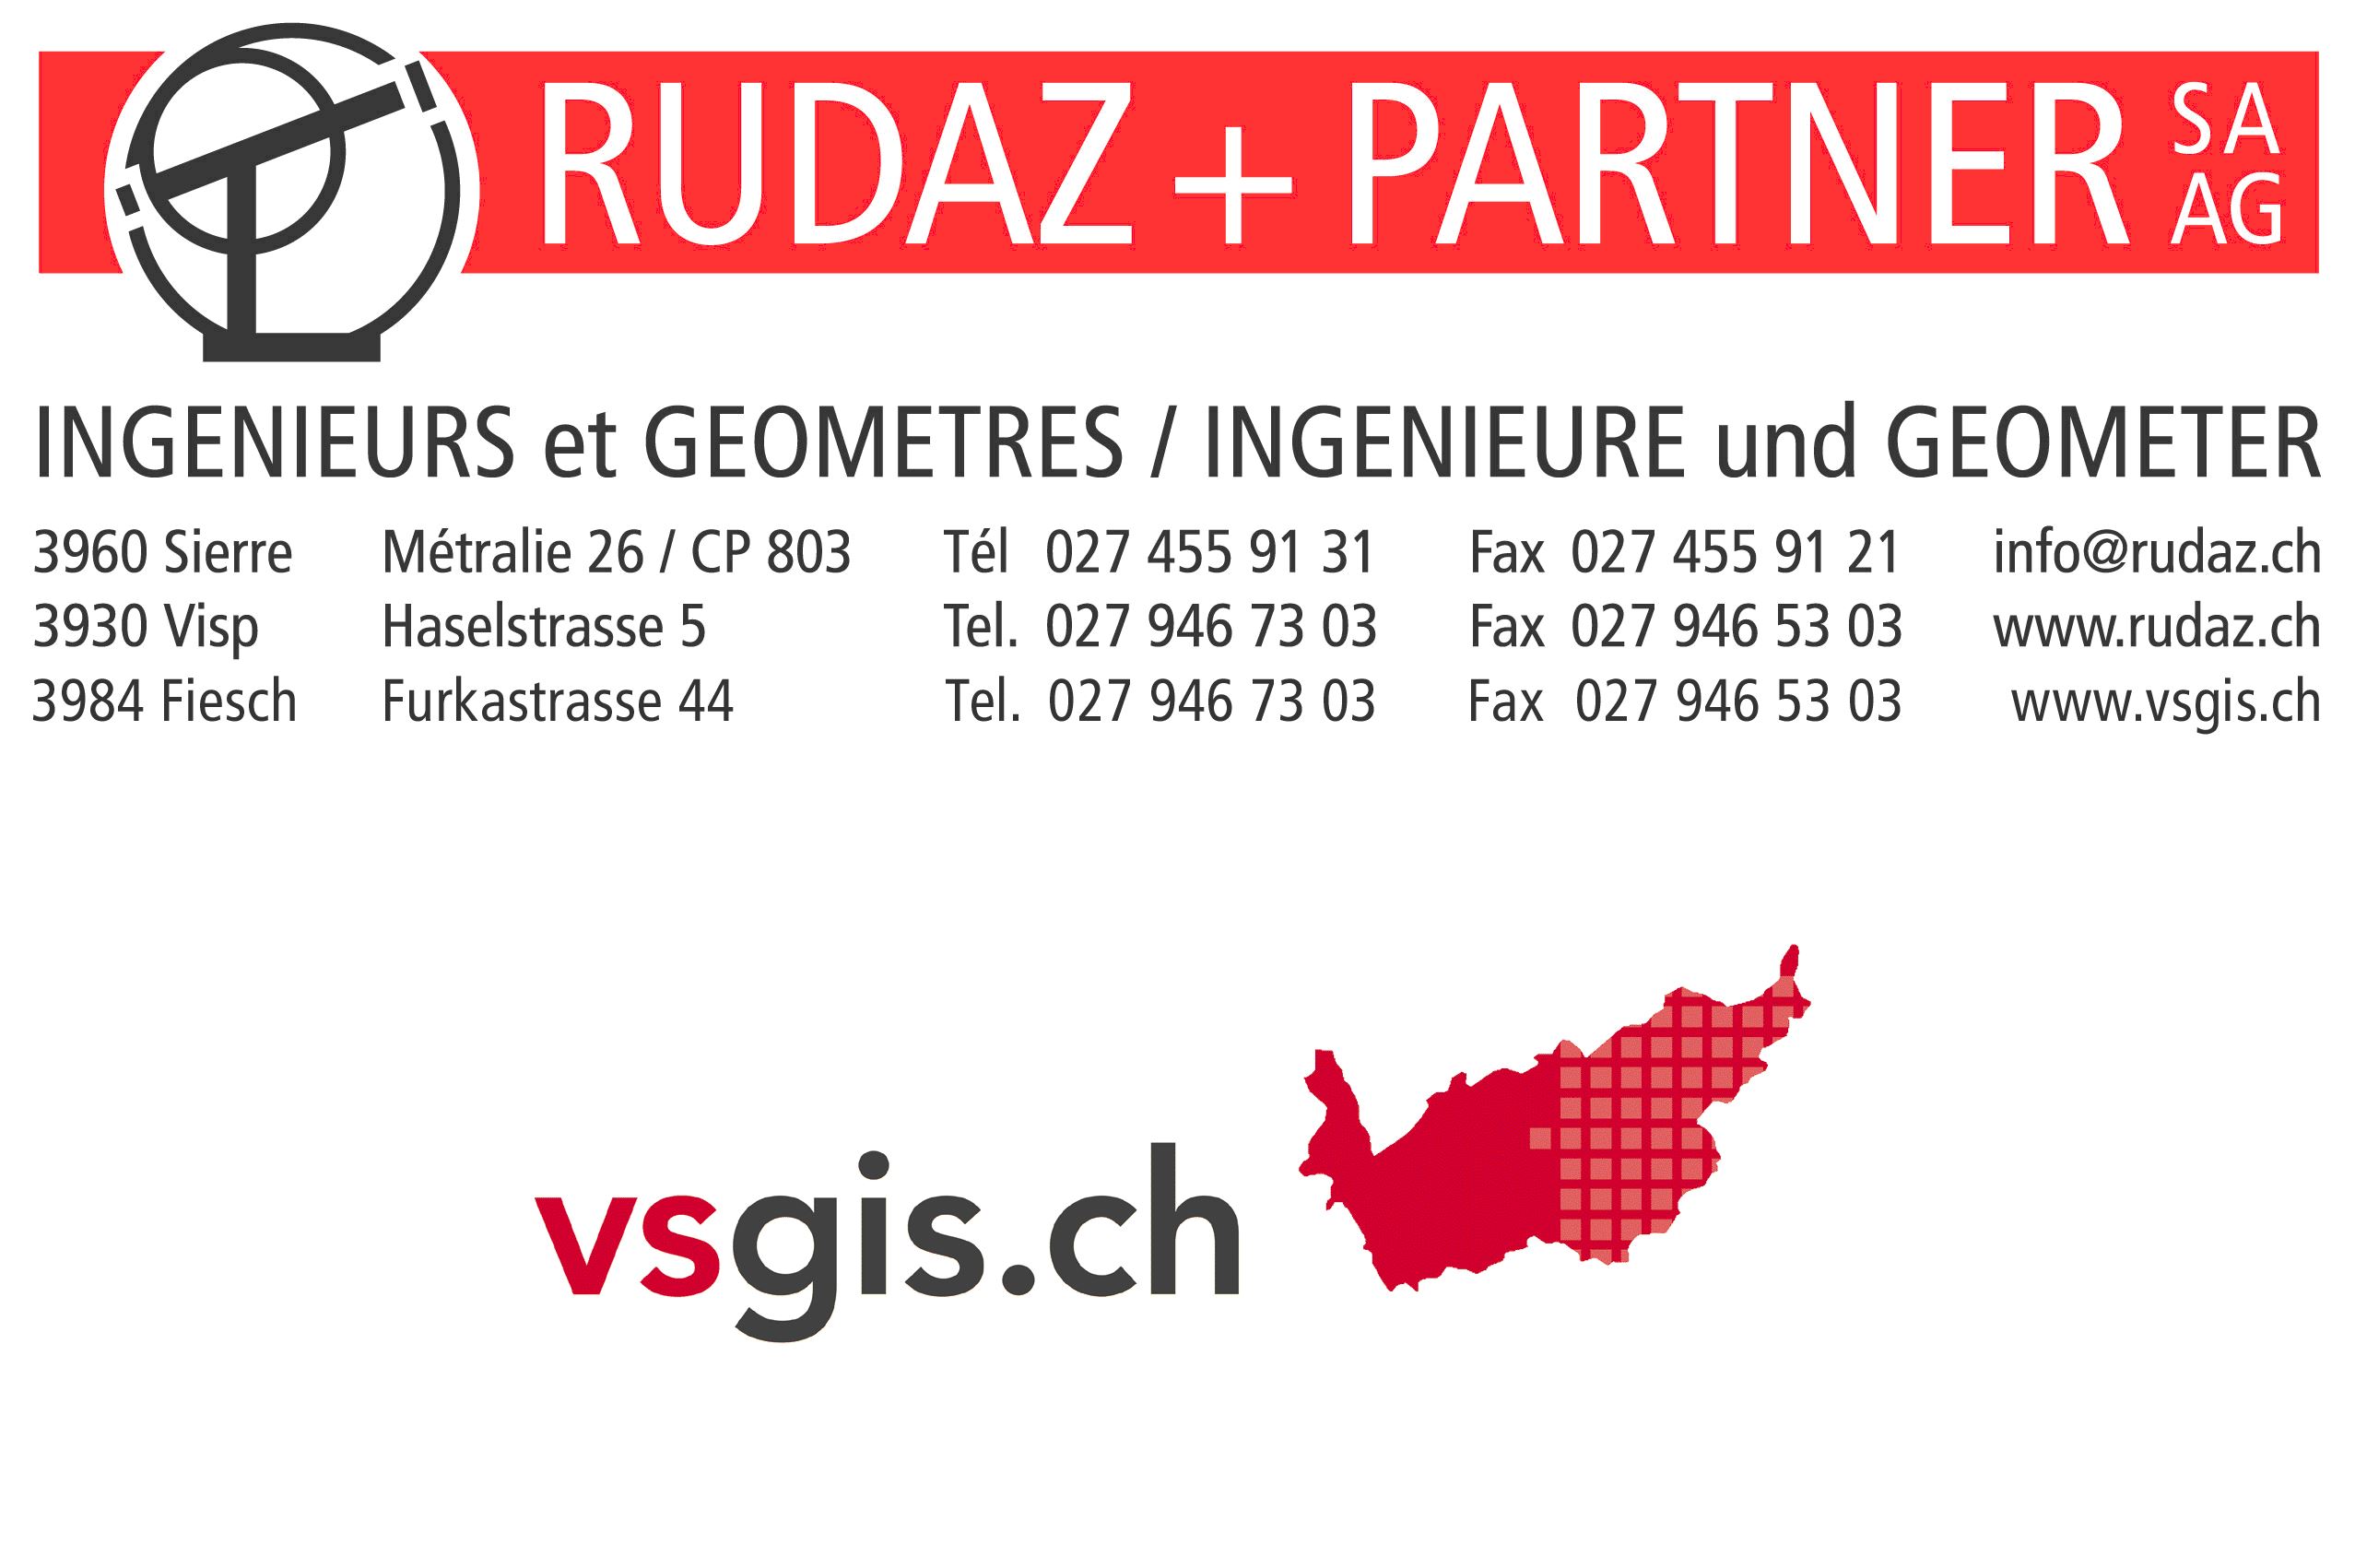 Rudaz + Partner SA/AG Ingénieurs et Géomètres